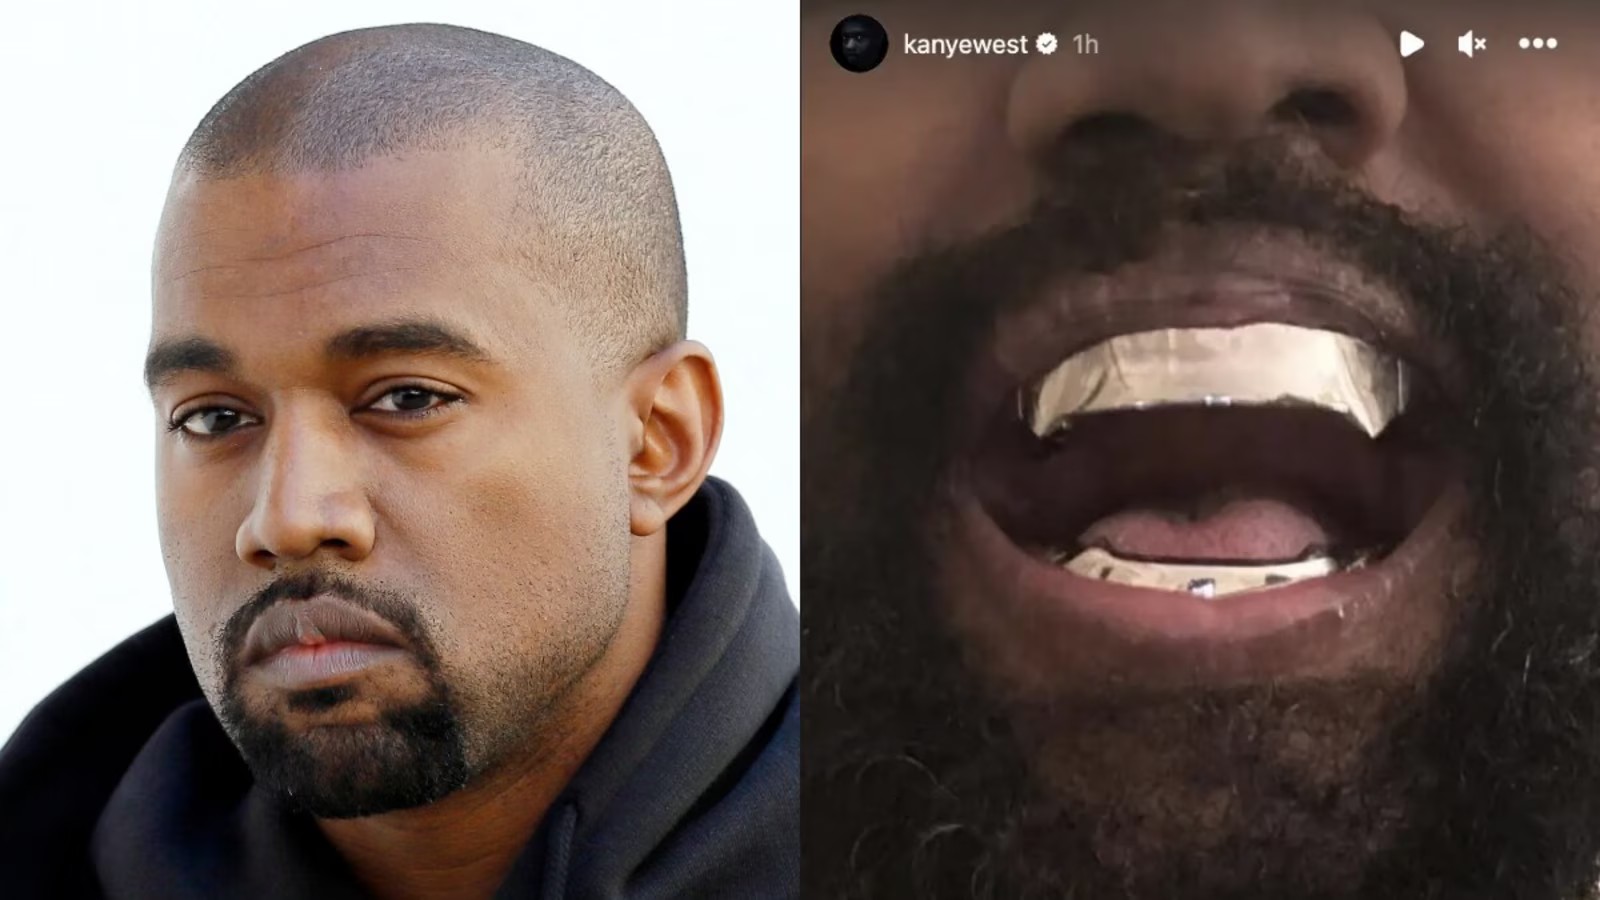 Kanye West nhổ hết răng thật để thay bộ răng Titan có giá “đắt hơn cả kim cương"!